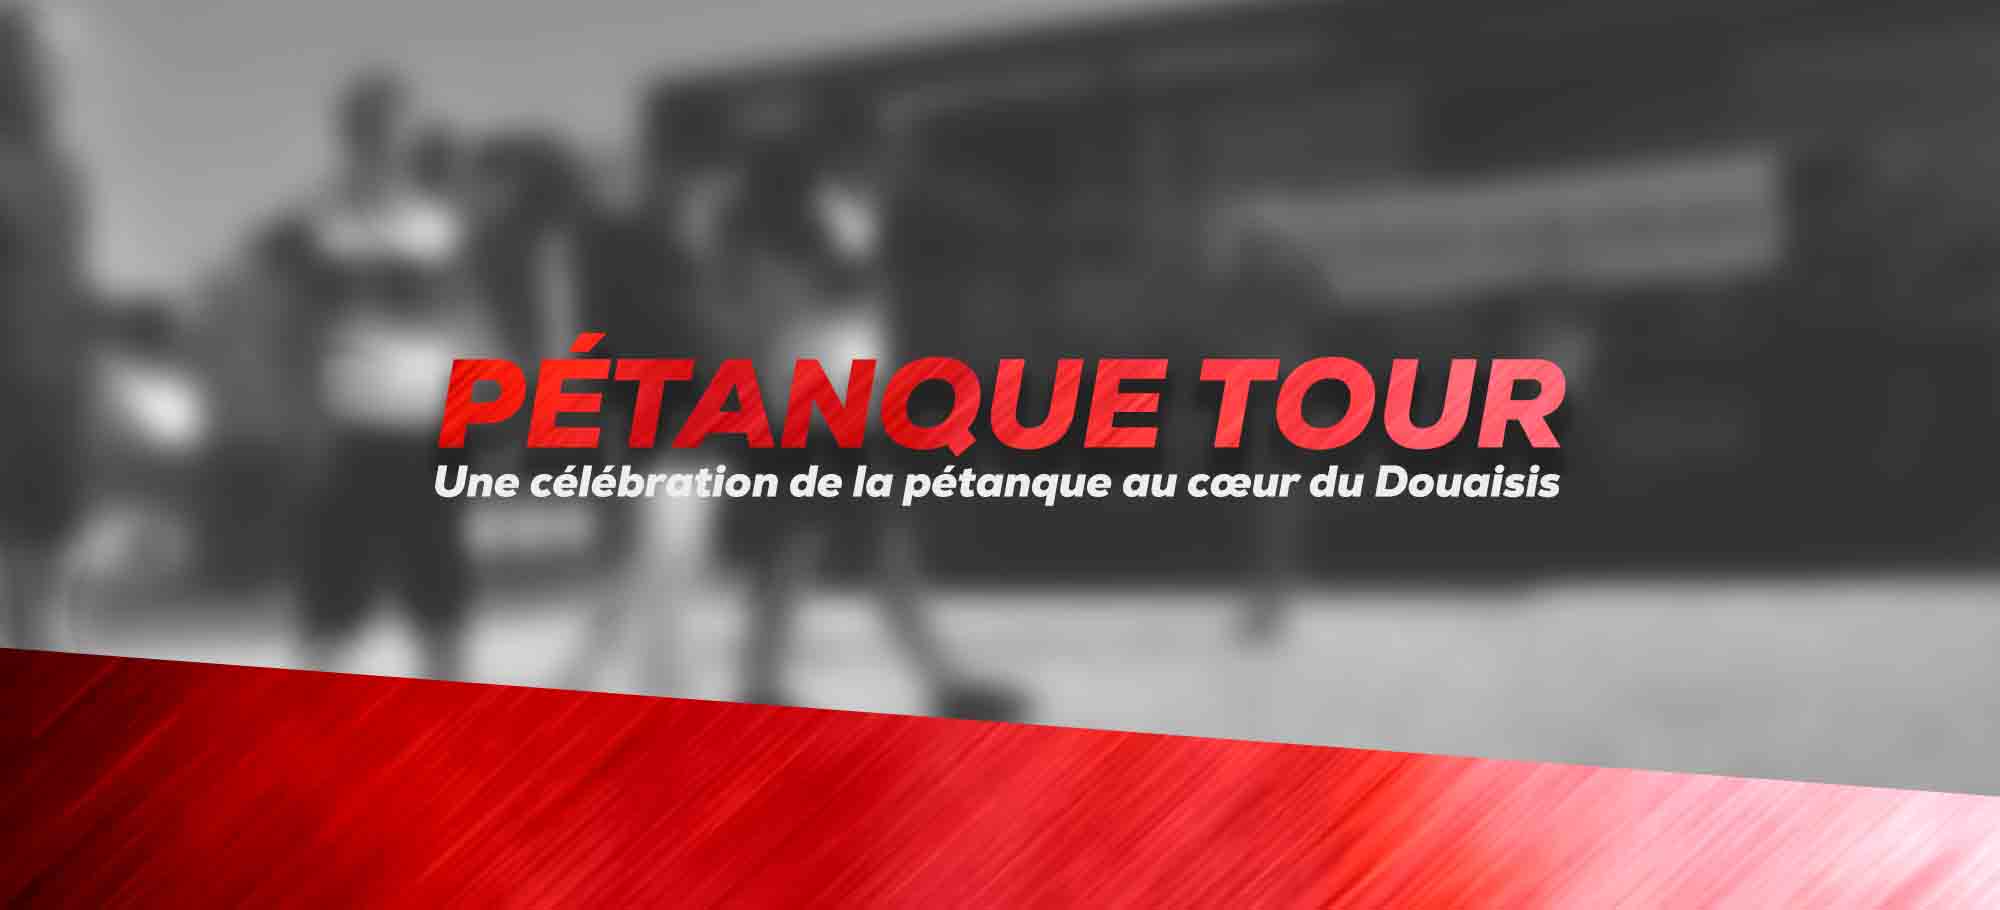 You are currently viewing Le Pétanque Tour : une célébration de la pétanque au cœur du Douaisis